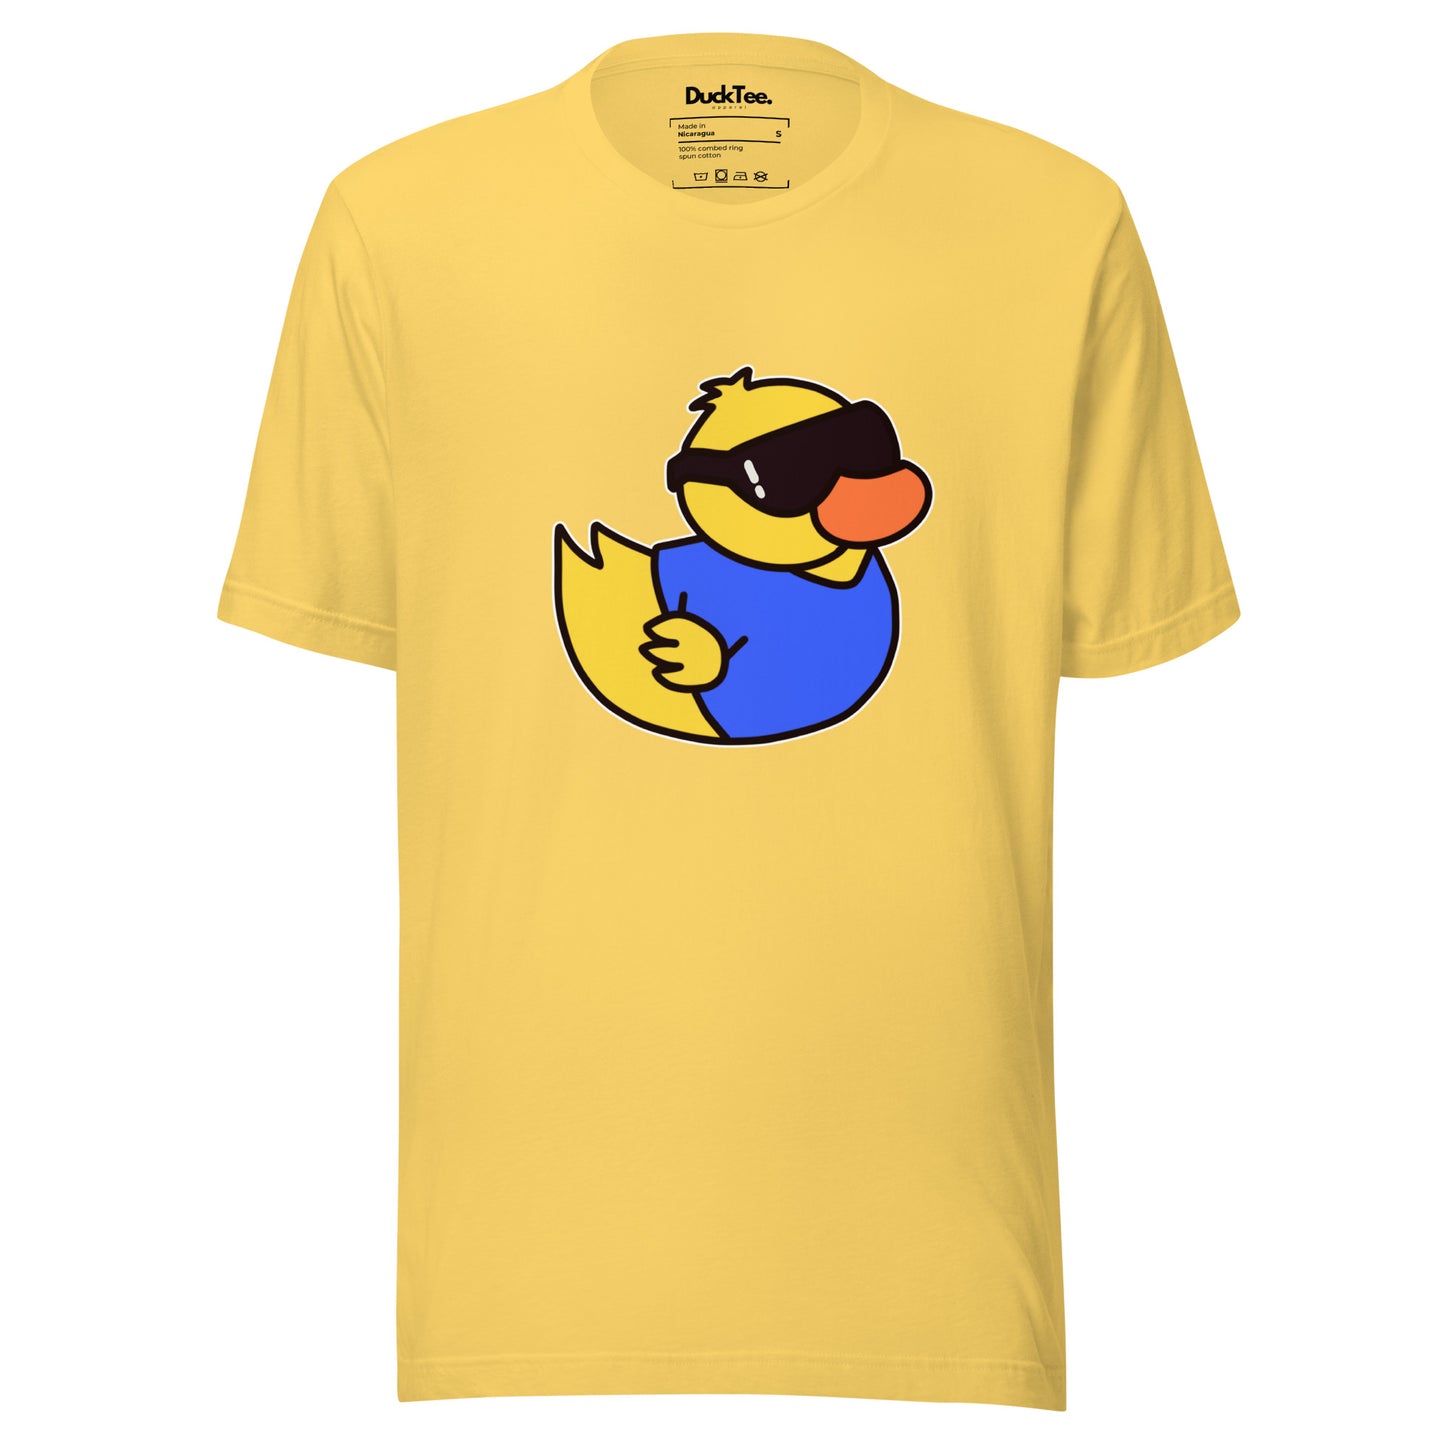 Classic DuckTee Unisex t-shirt